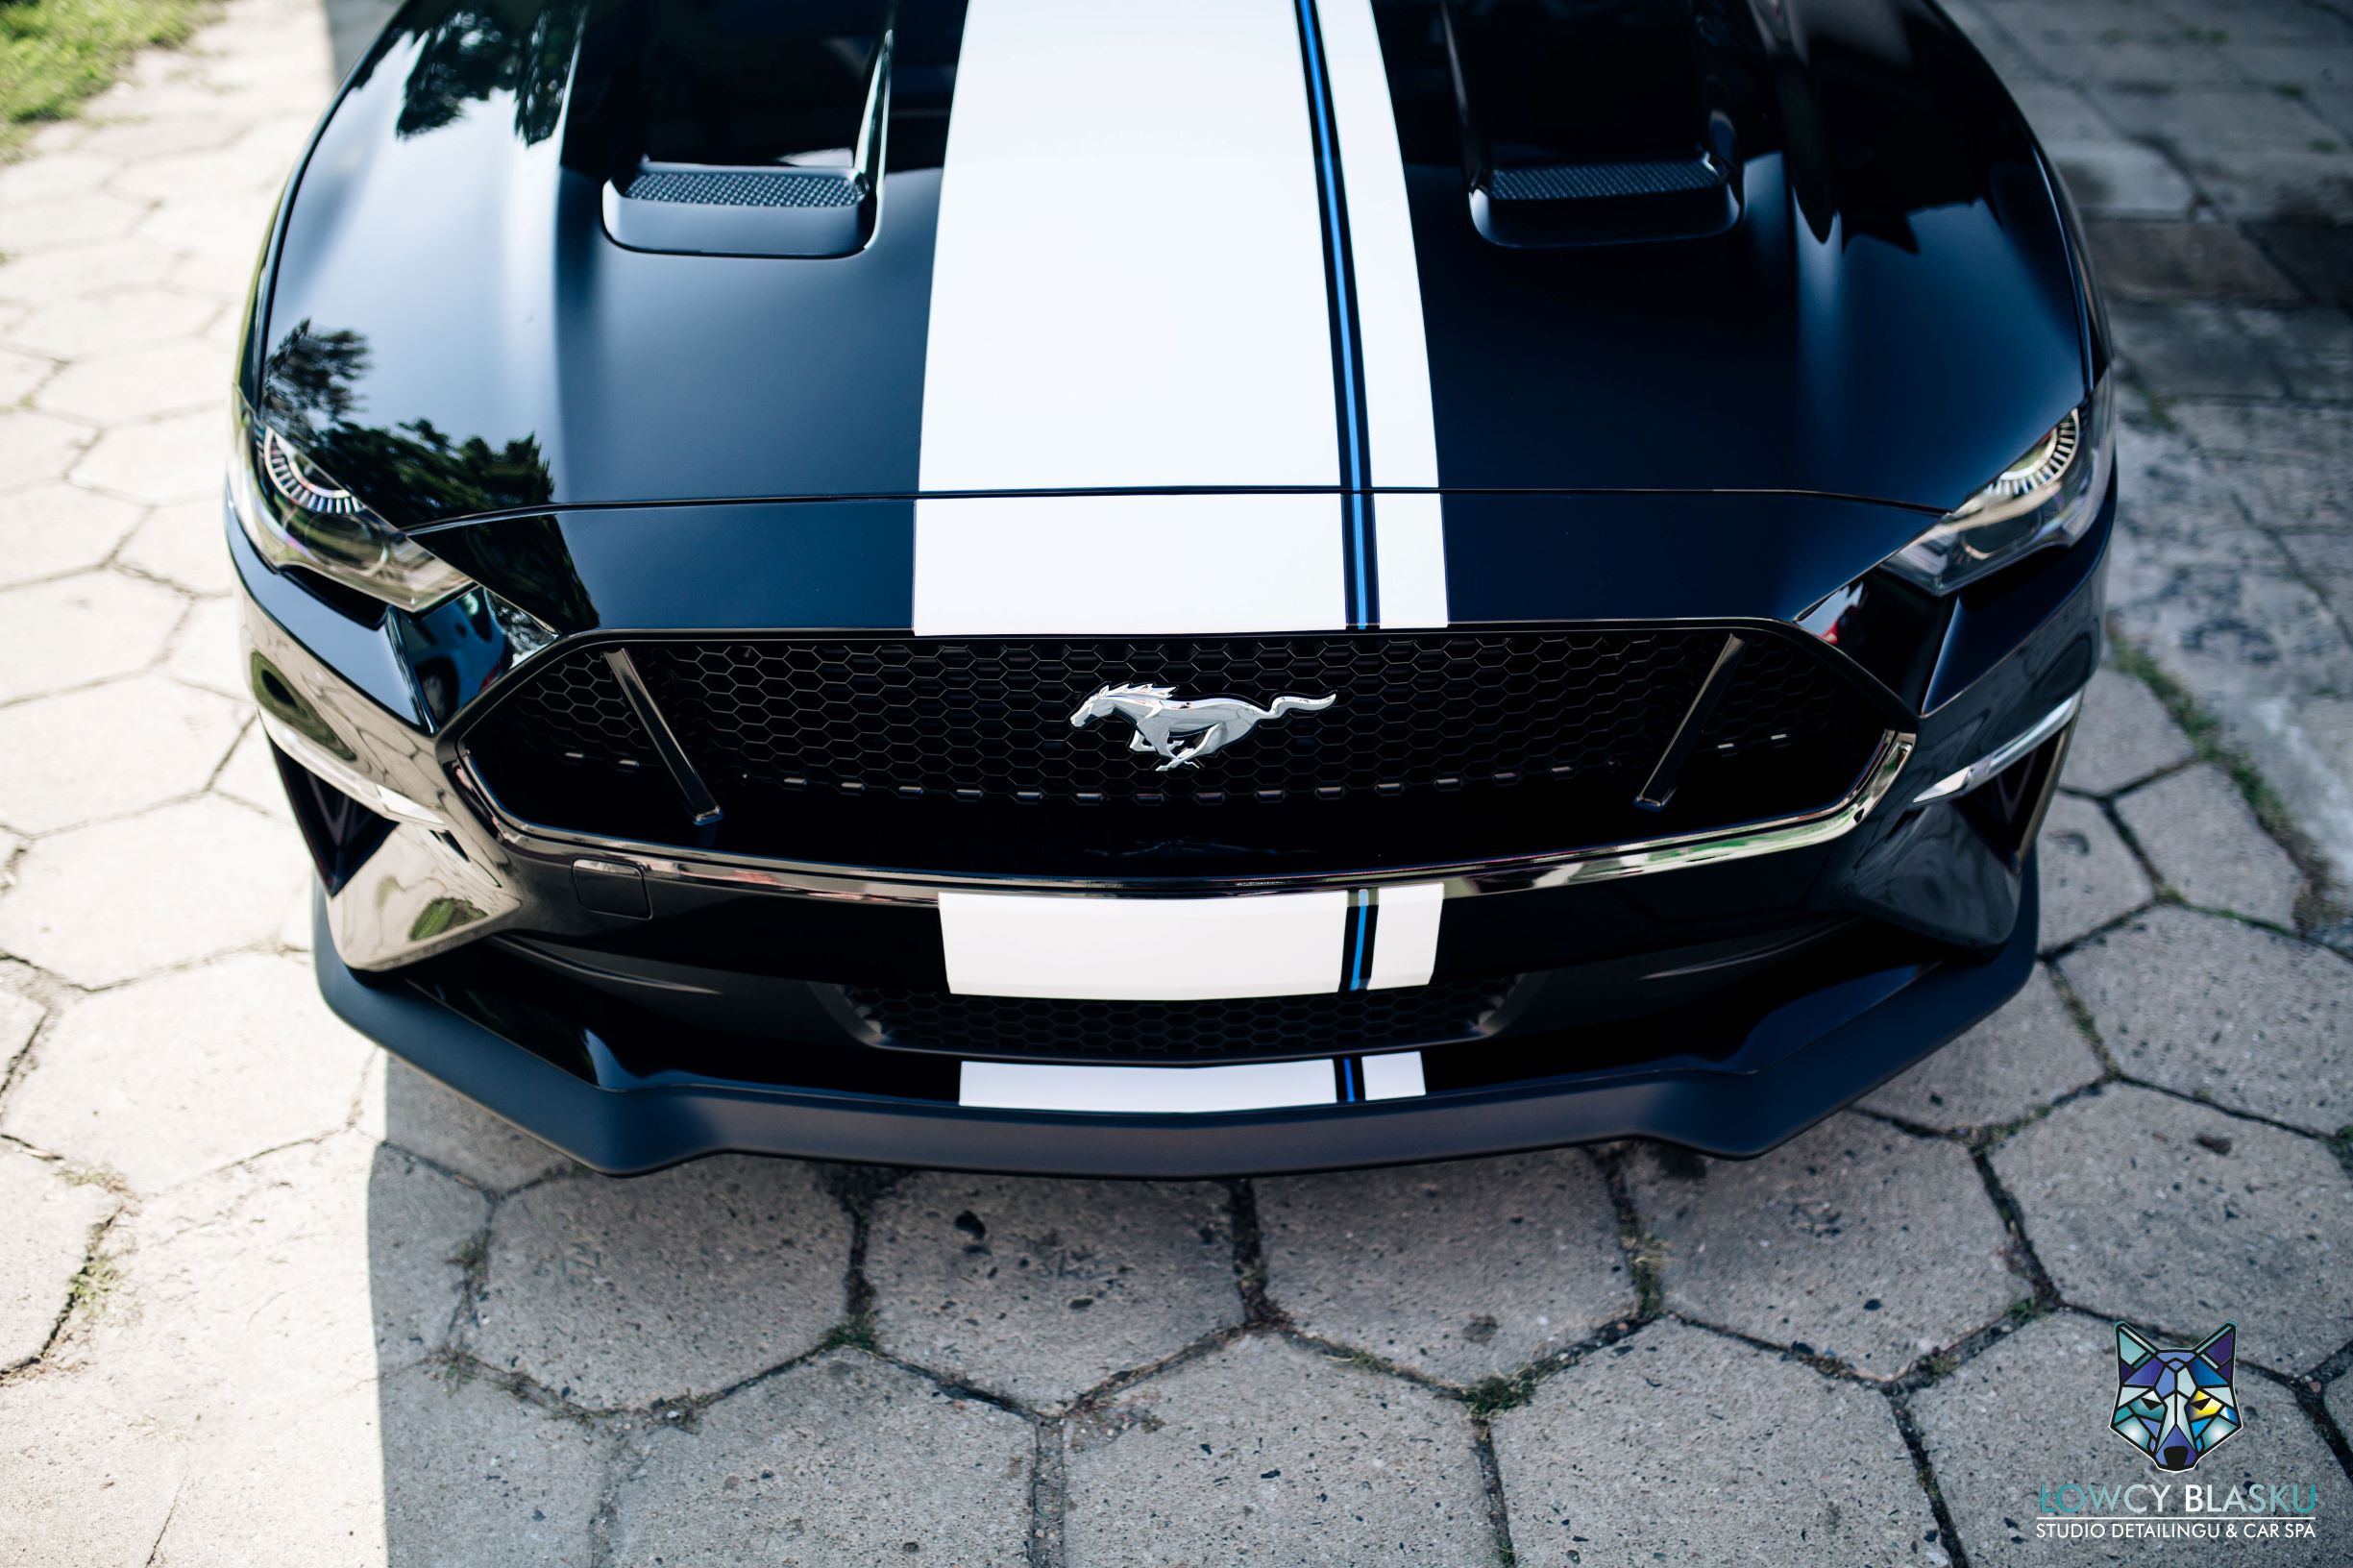 Ford Mustang GT zabezpieczony folią ochronną samochodową, folie samochodowe, oklejanie foliami, łowcy blasku